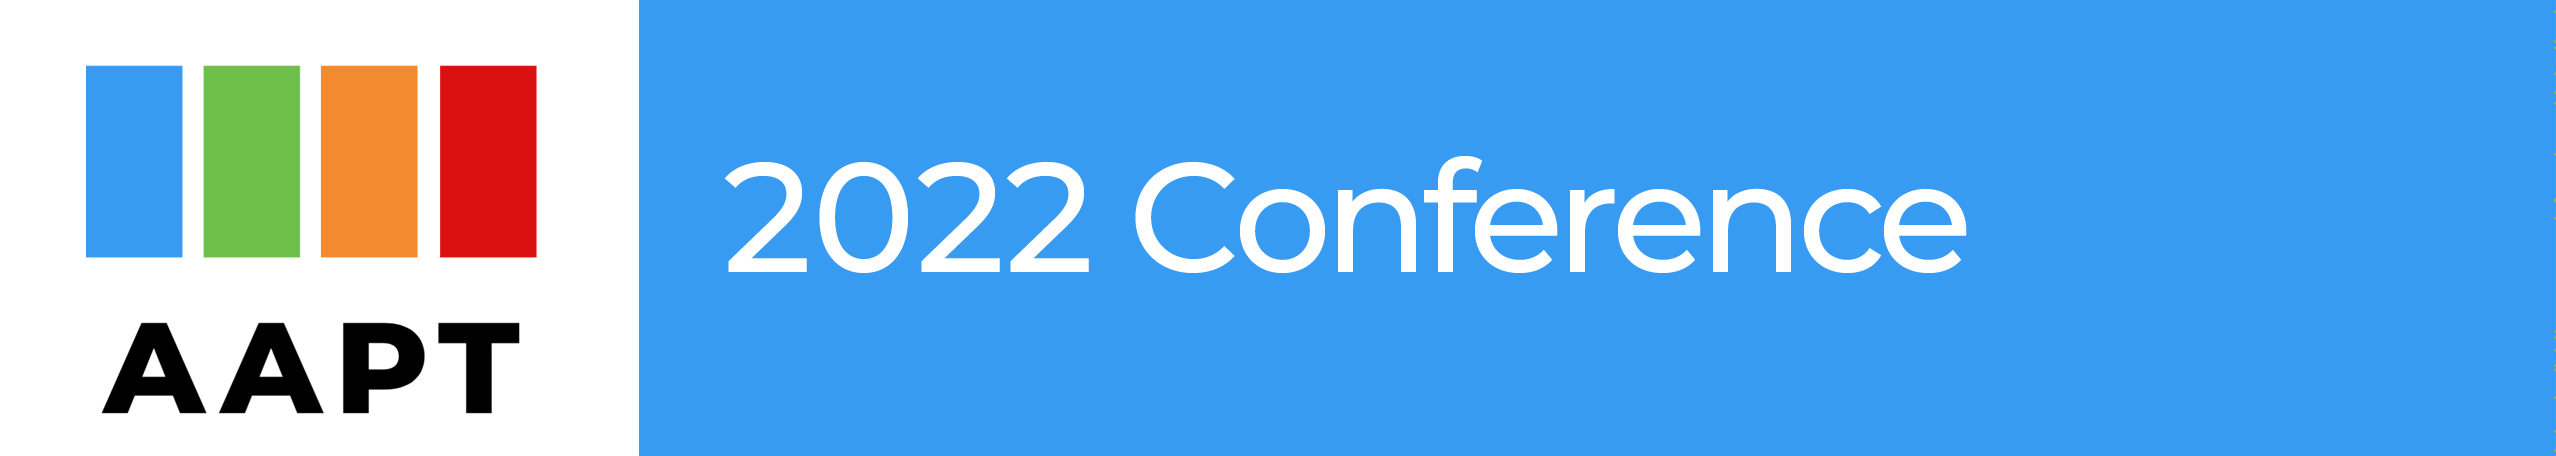 Conference Header Image